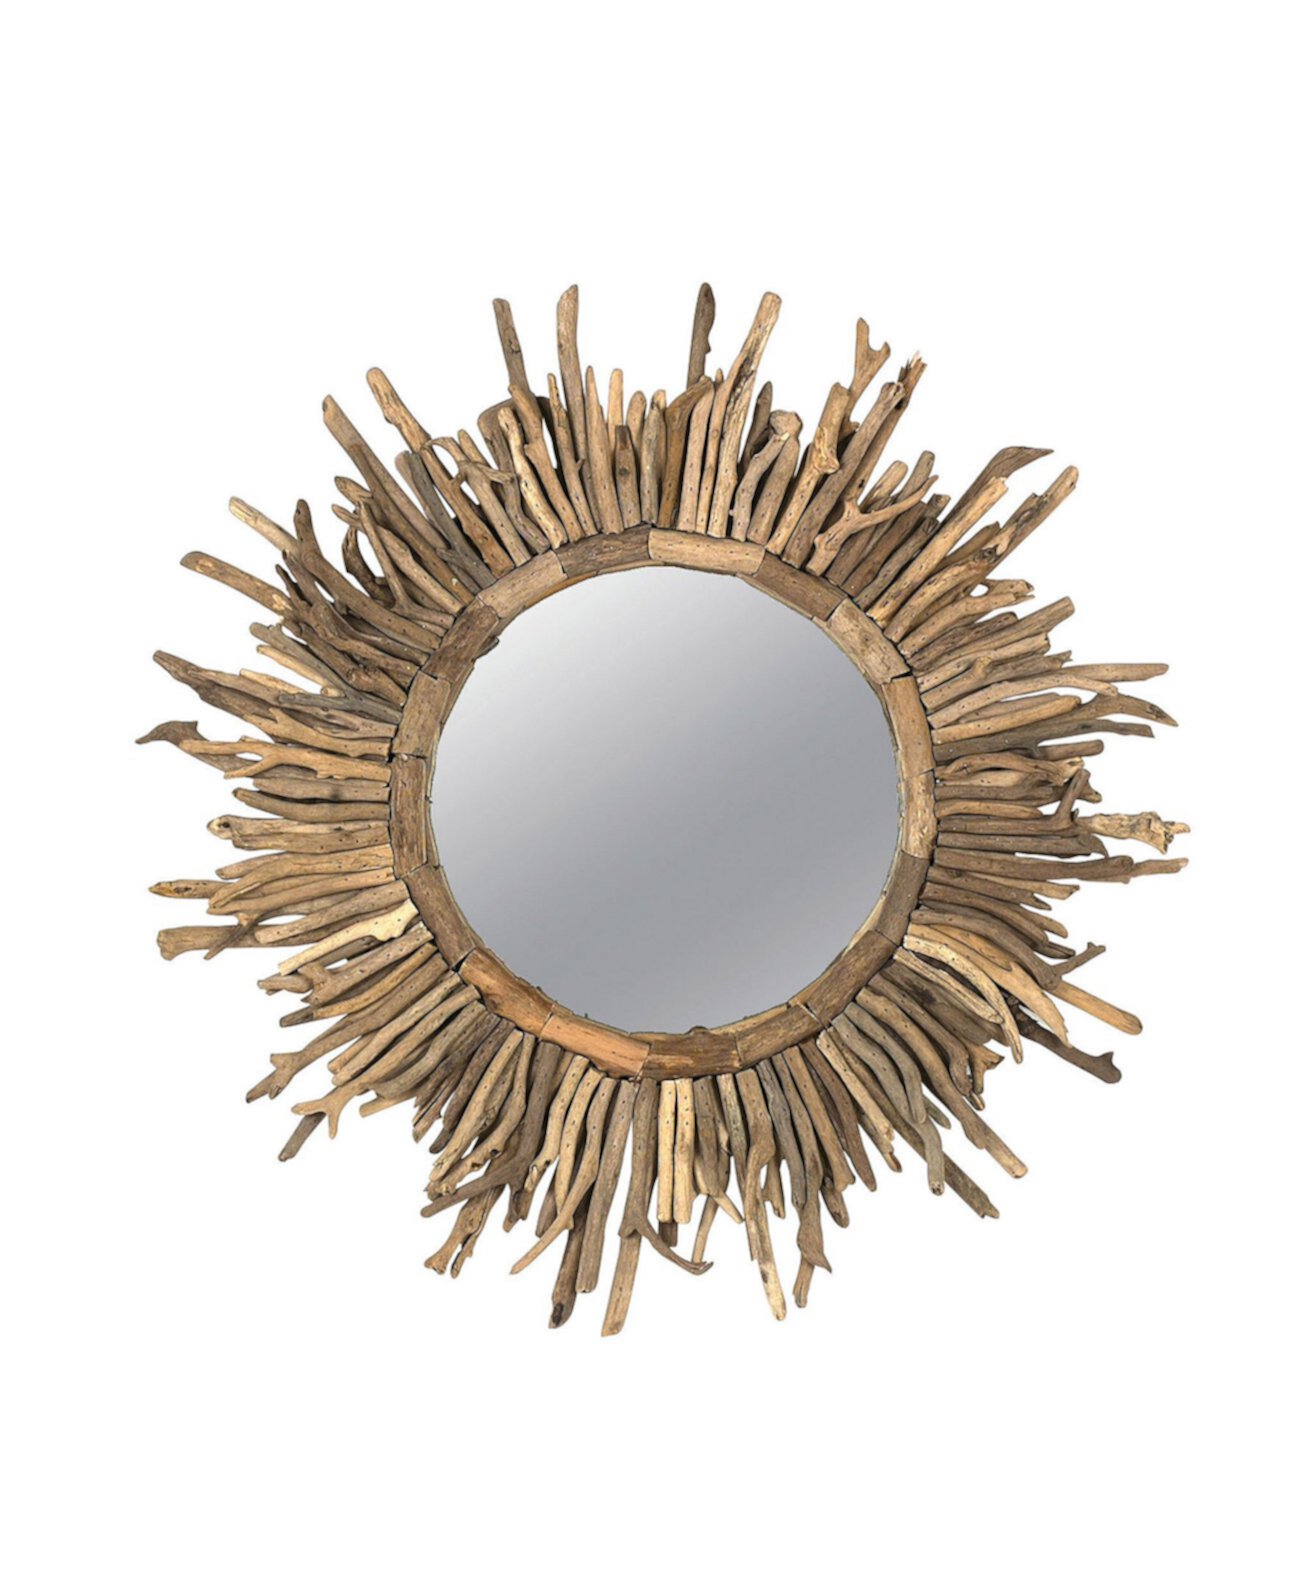 Настенное зеркало с солнечными лучами, круглое в раме из коряги, натуральное 3R Studio